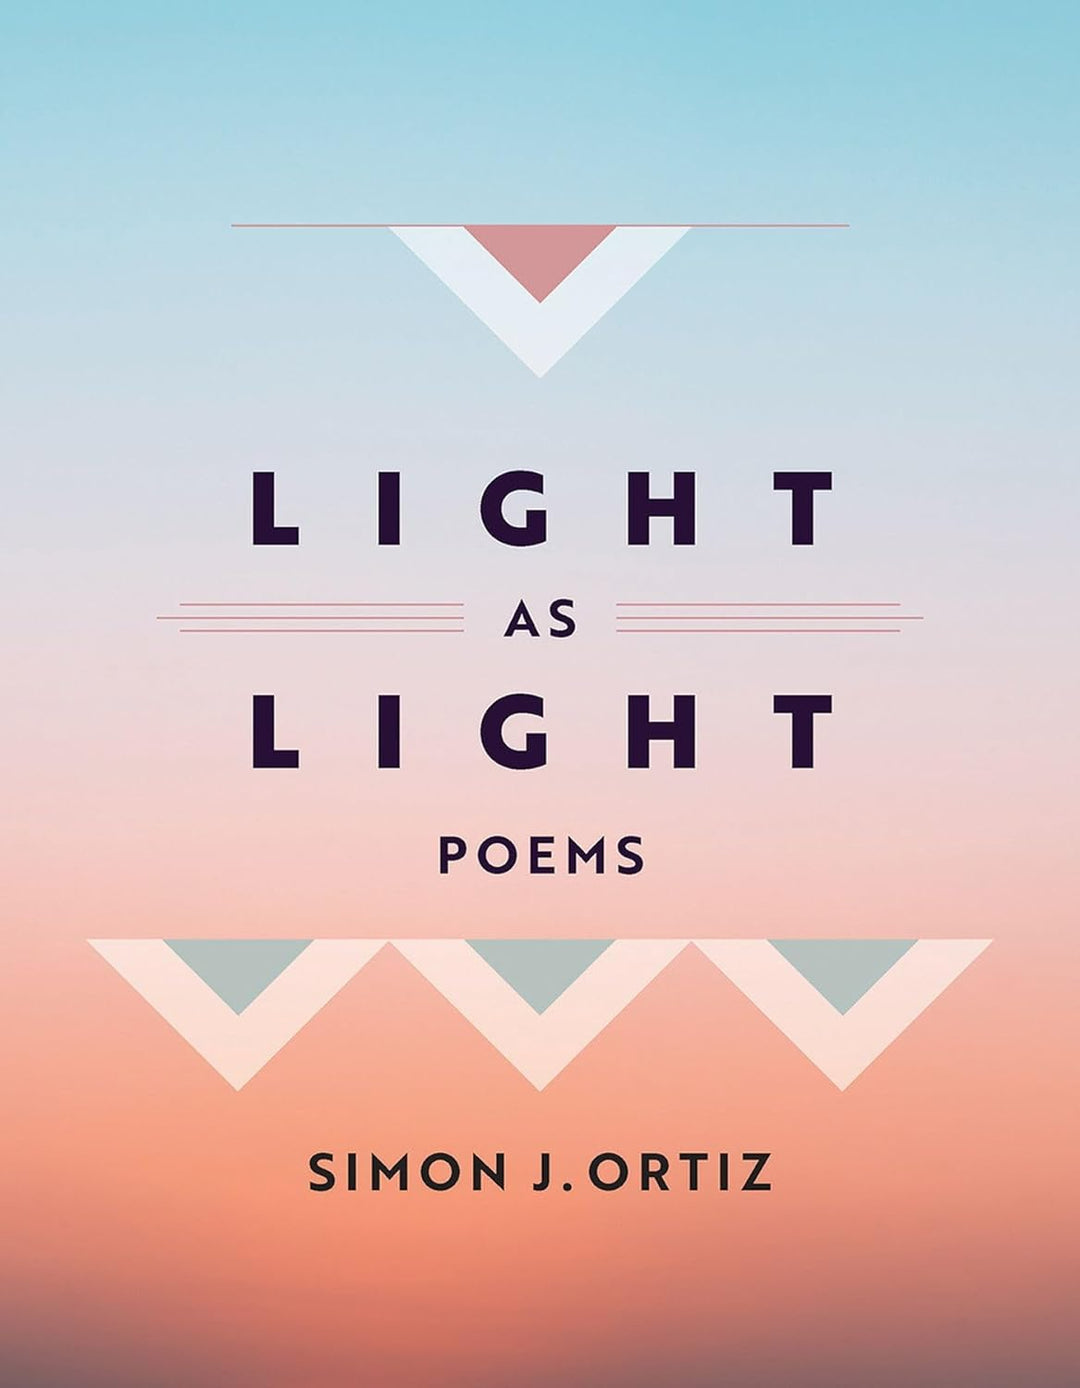 Light as Light by Simon J. Ortiz